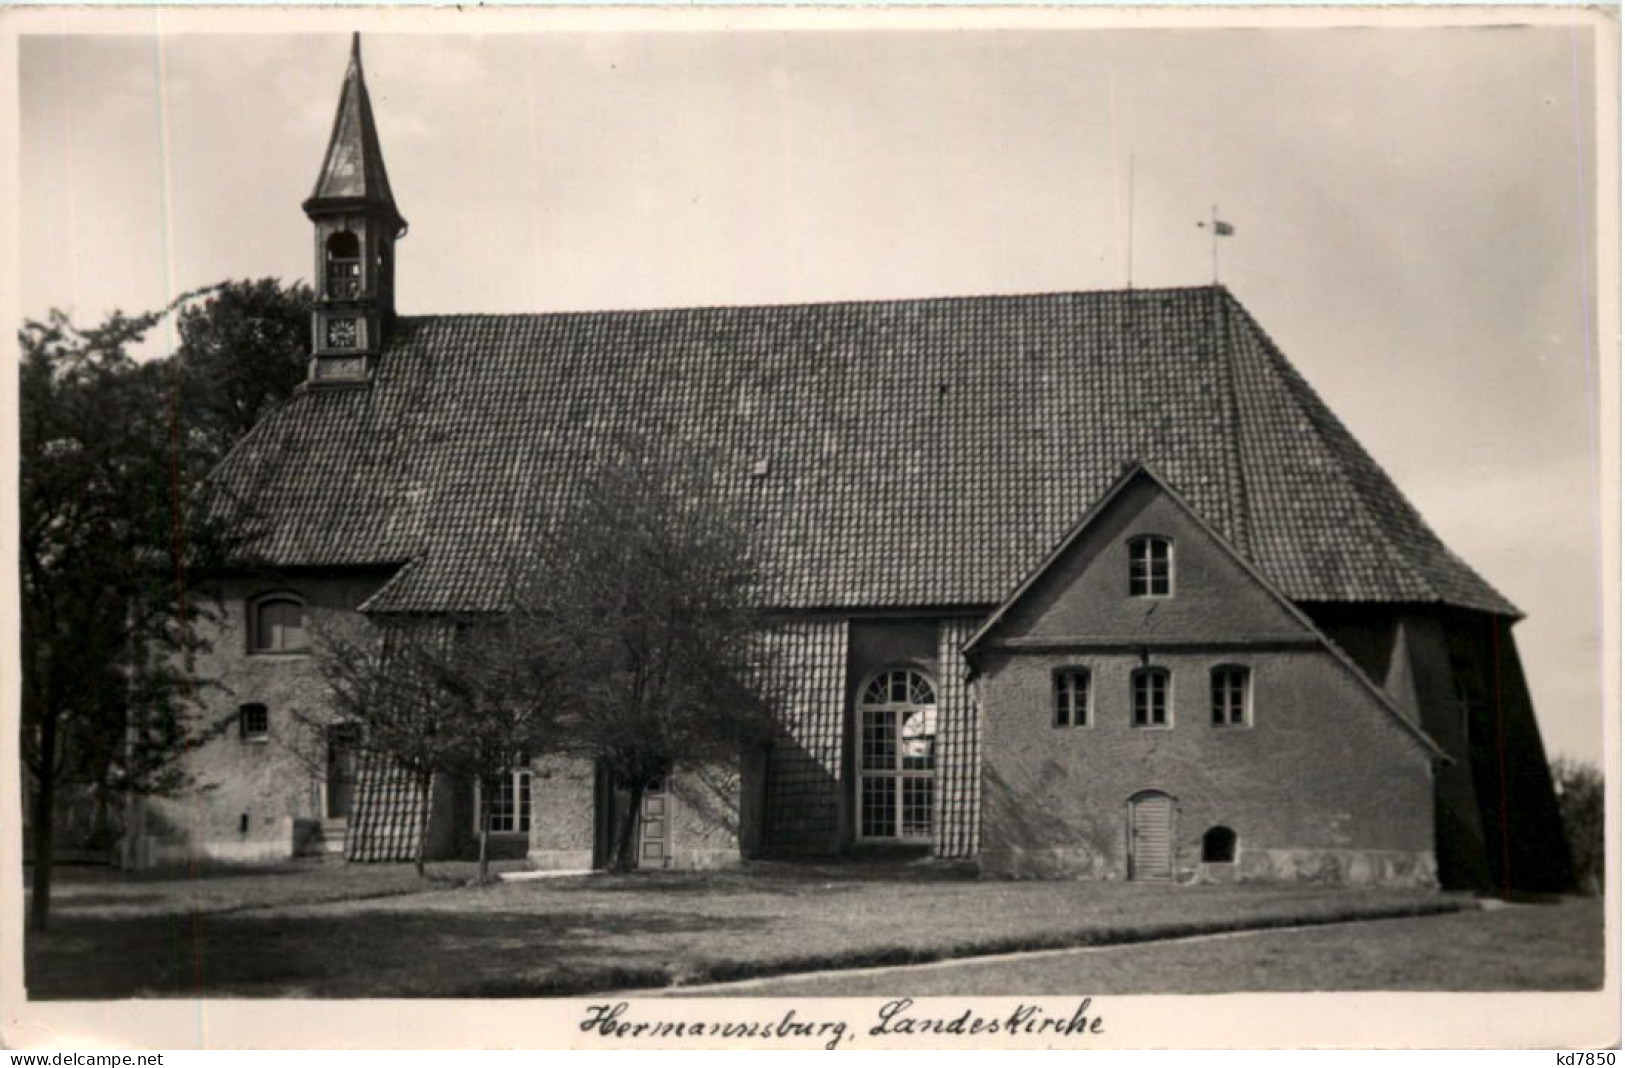 Hermannsburg, Landeskirche - Celle